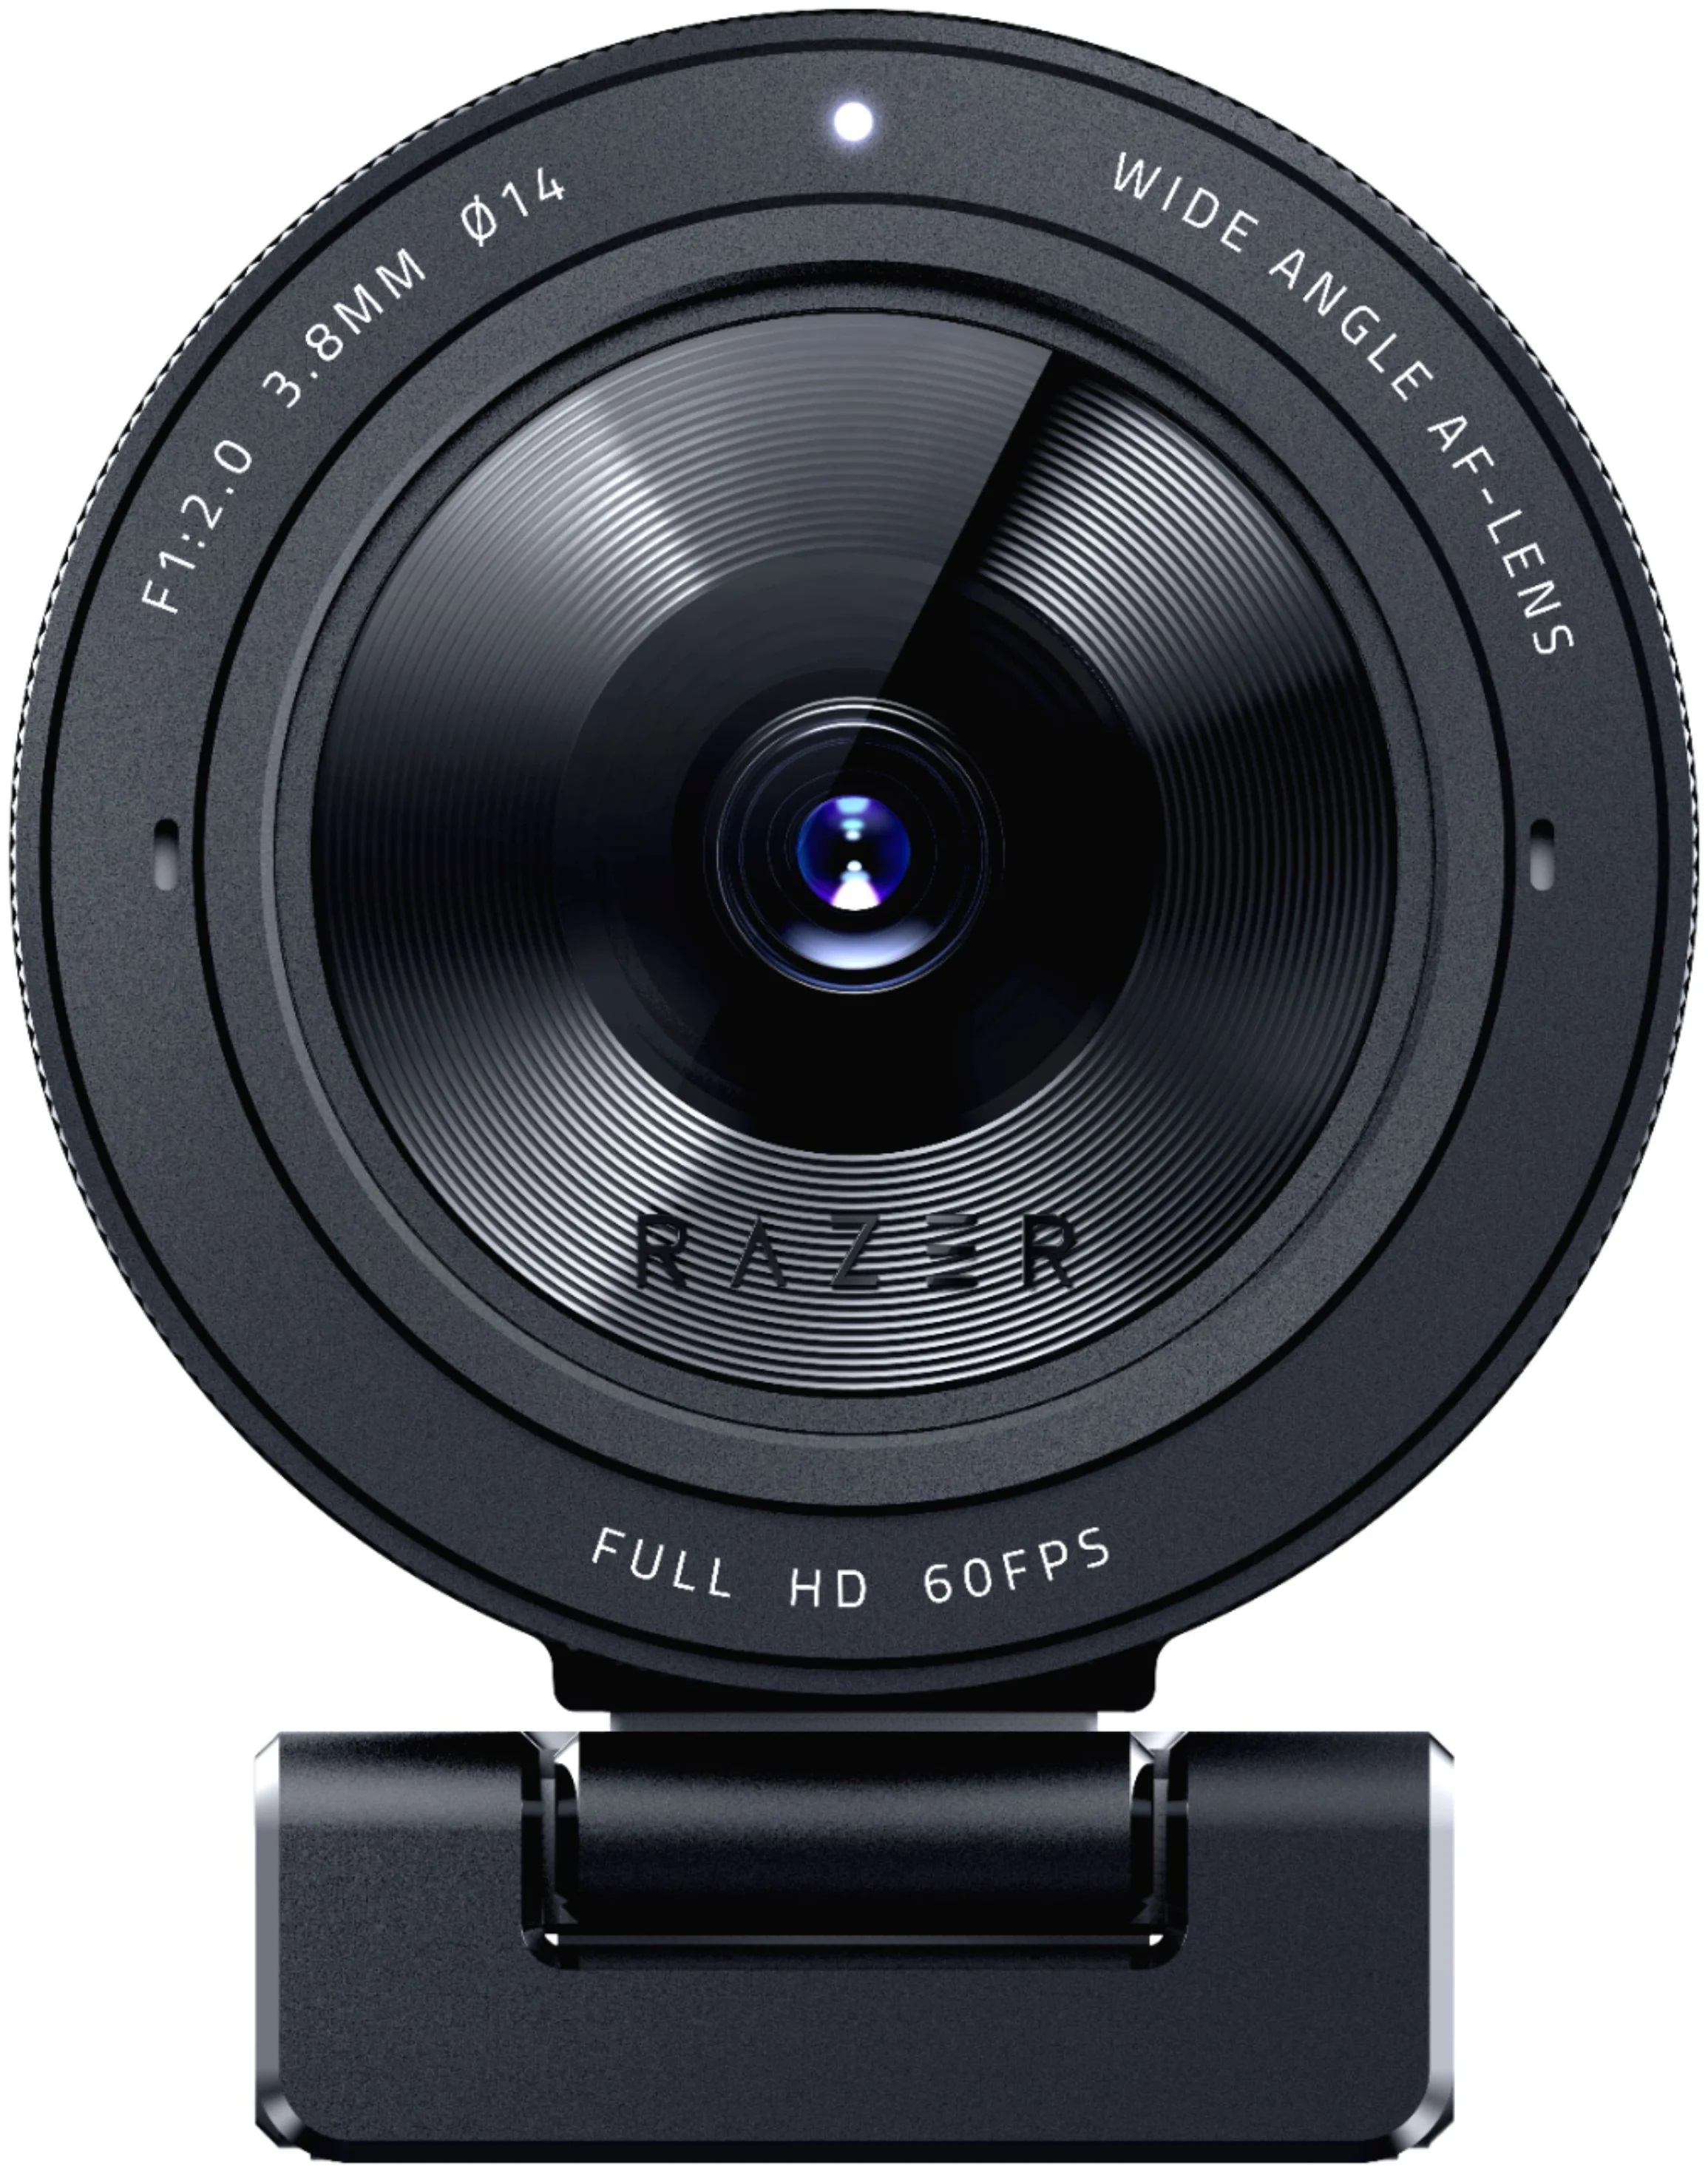 Веб-камера RAZER Kiyo Pro, с матрицей 2.1 МП, разрешение видео 1920x1080, подключение через USB 3.0, встроенный микрофон, автоматическая фокусировка